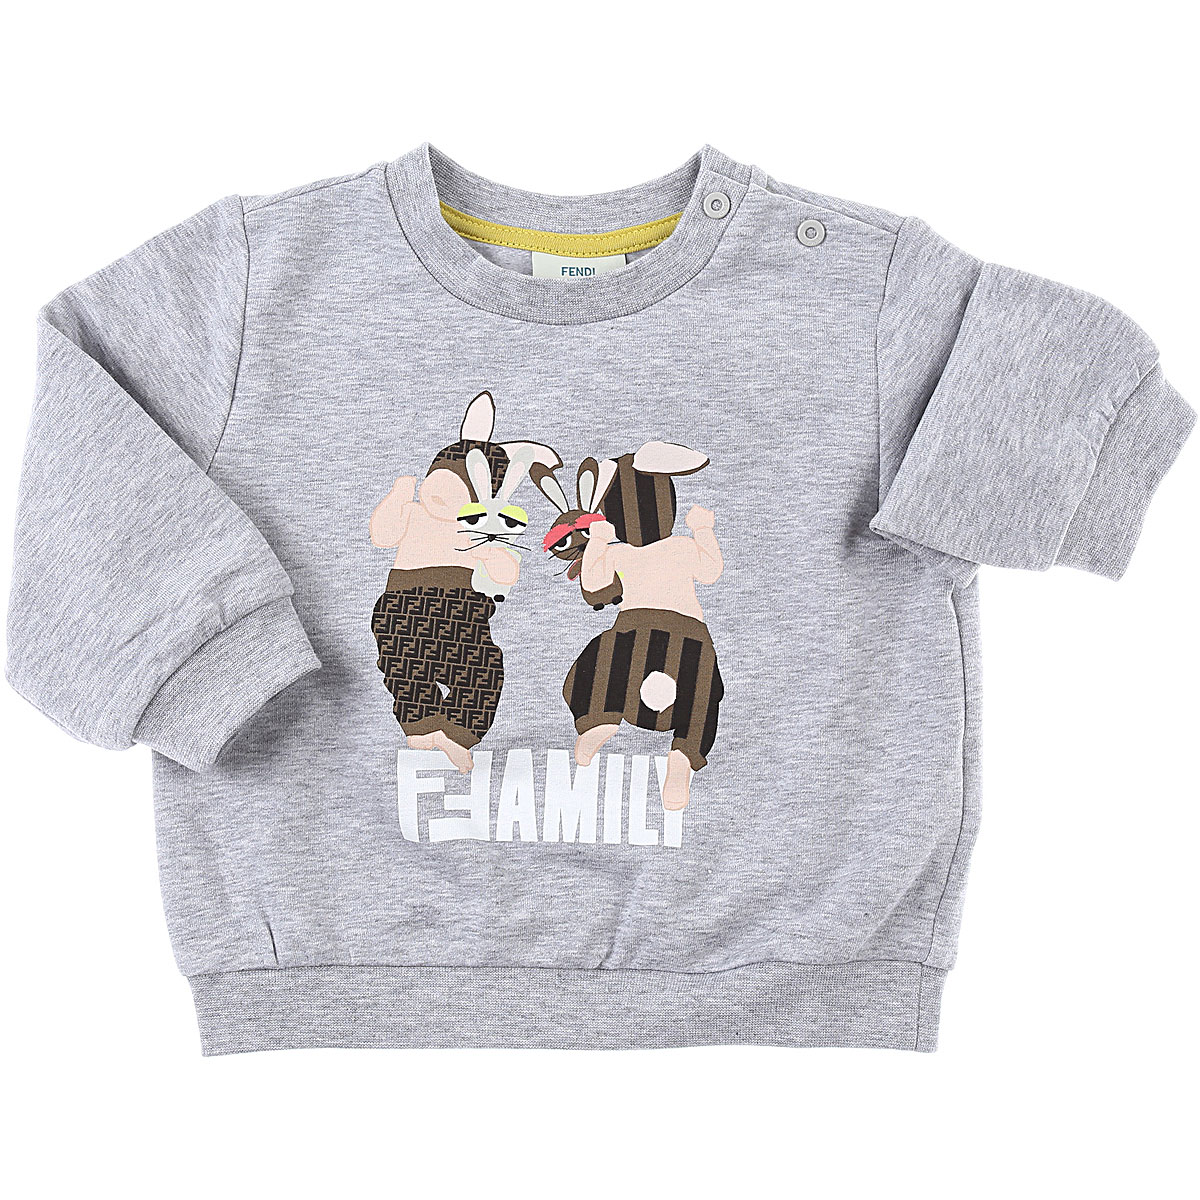 Fendi Baby Sweatshirt & Kapuzenpullover für Jungen Günstig im Sale, Grau, Baumwolle, 2017, 12 M 18M 2Y 6M 9M